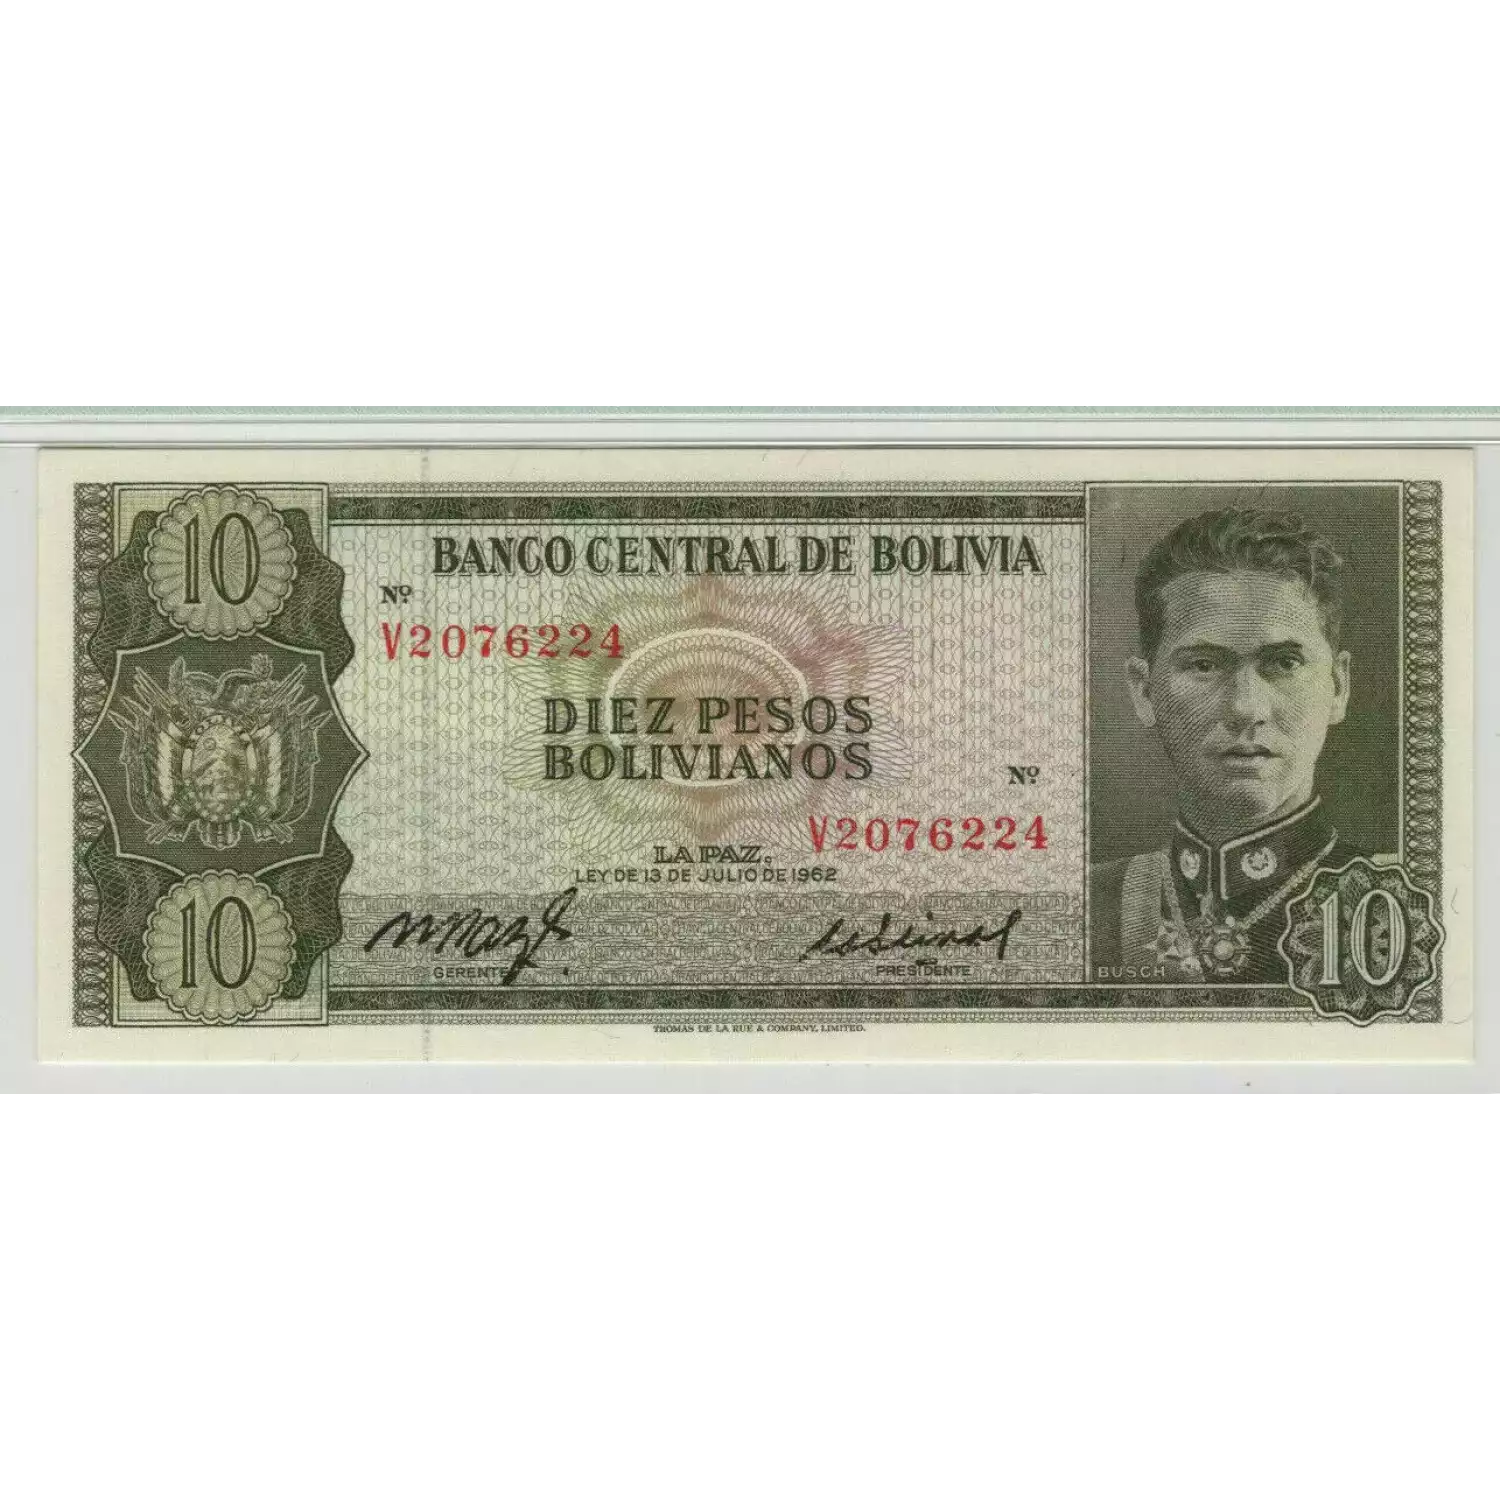 10 Nouveaux Francs L.1962, Ley de 13 de Julio de 1962 - First Issue a. Issued note Bolivia 154 (3)